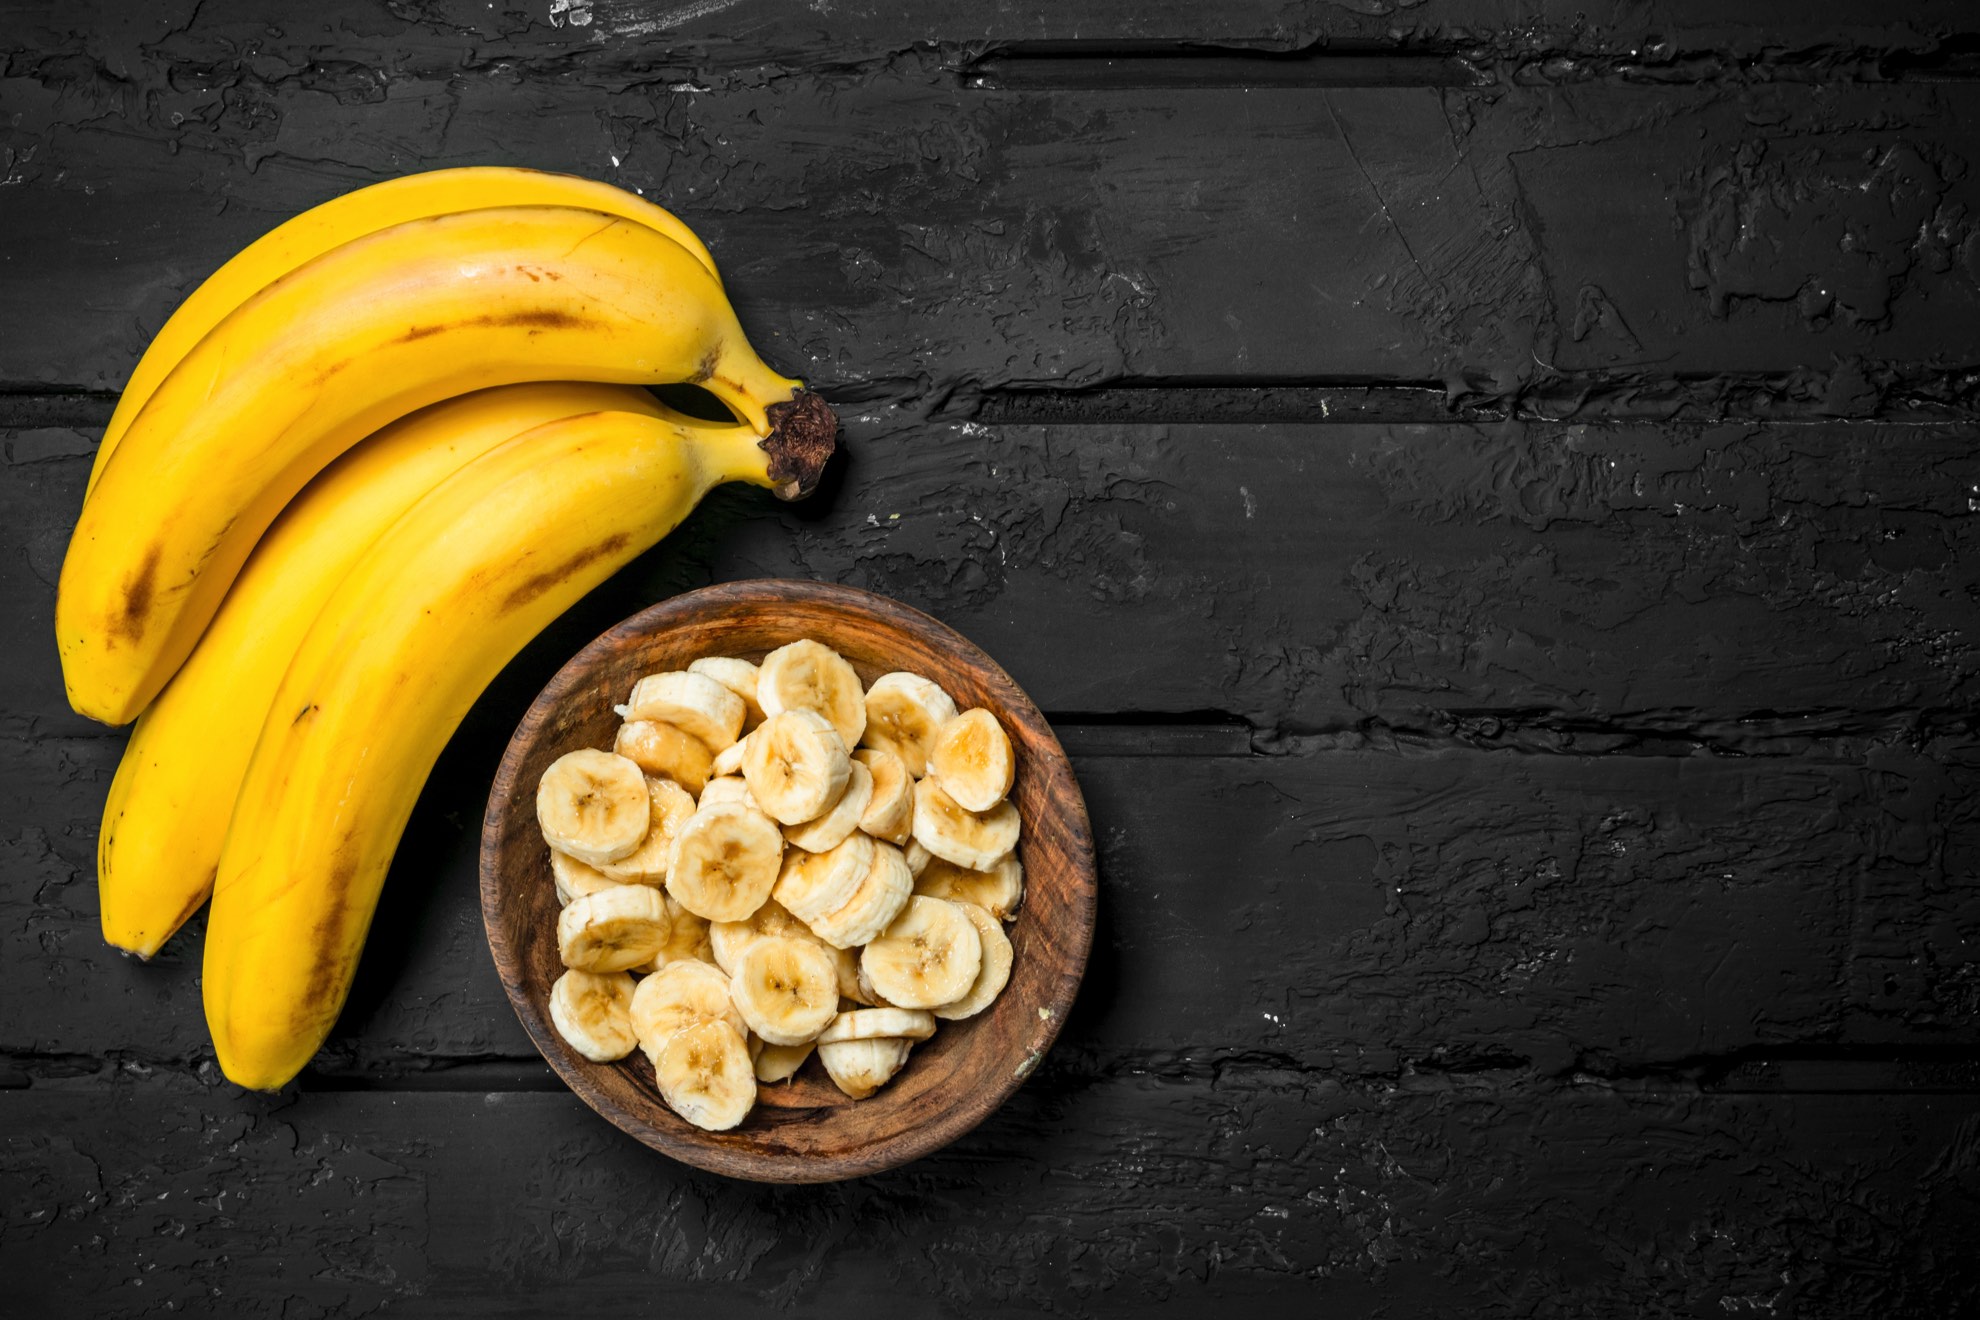 Banany, ilustracja do artykułu o kaloriach banana